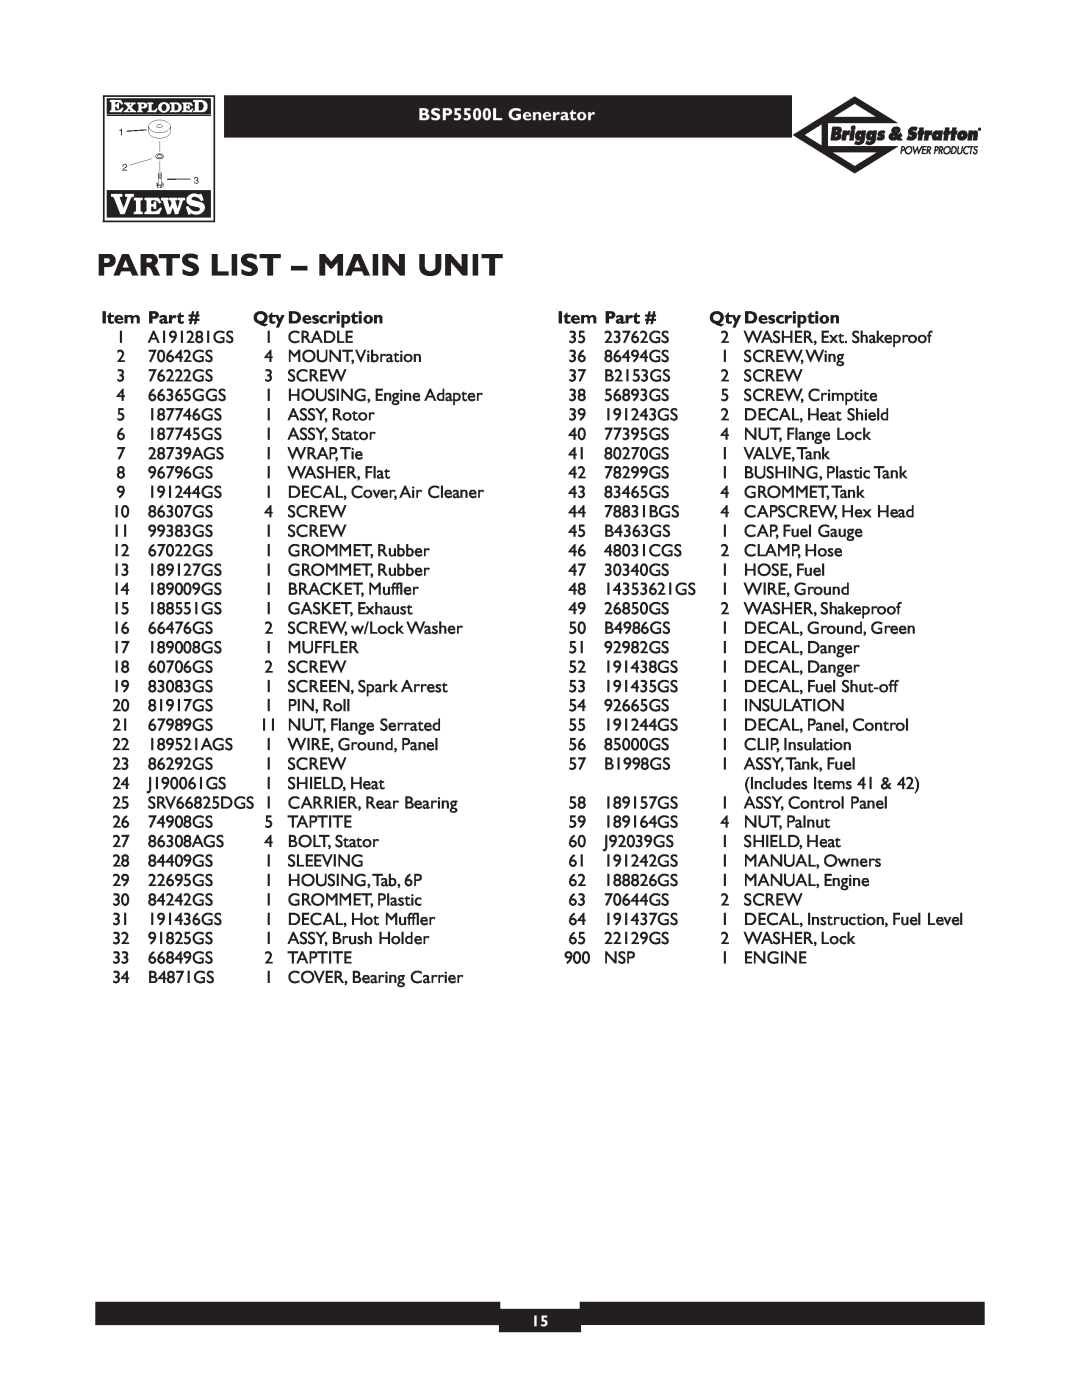 Briggs & Stratton bsp5500l owner manual Parts List - Main Unit, BSP5500L Generator, Qty Description 